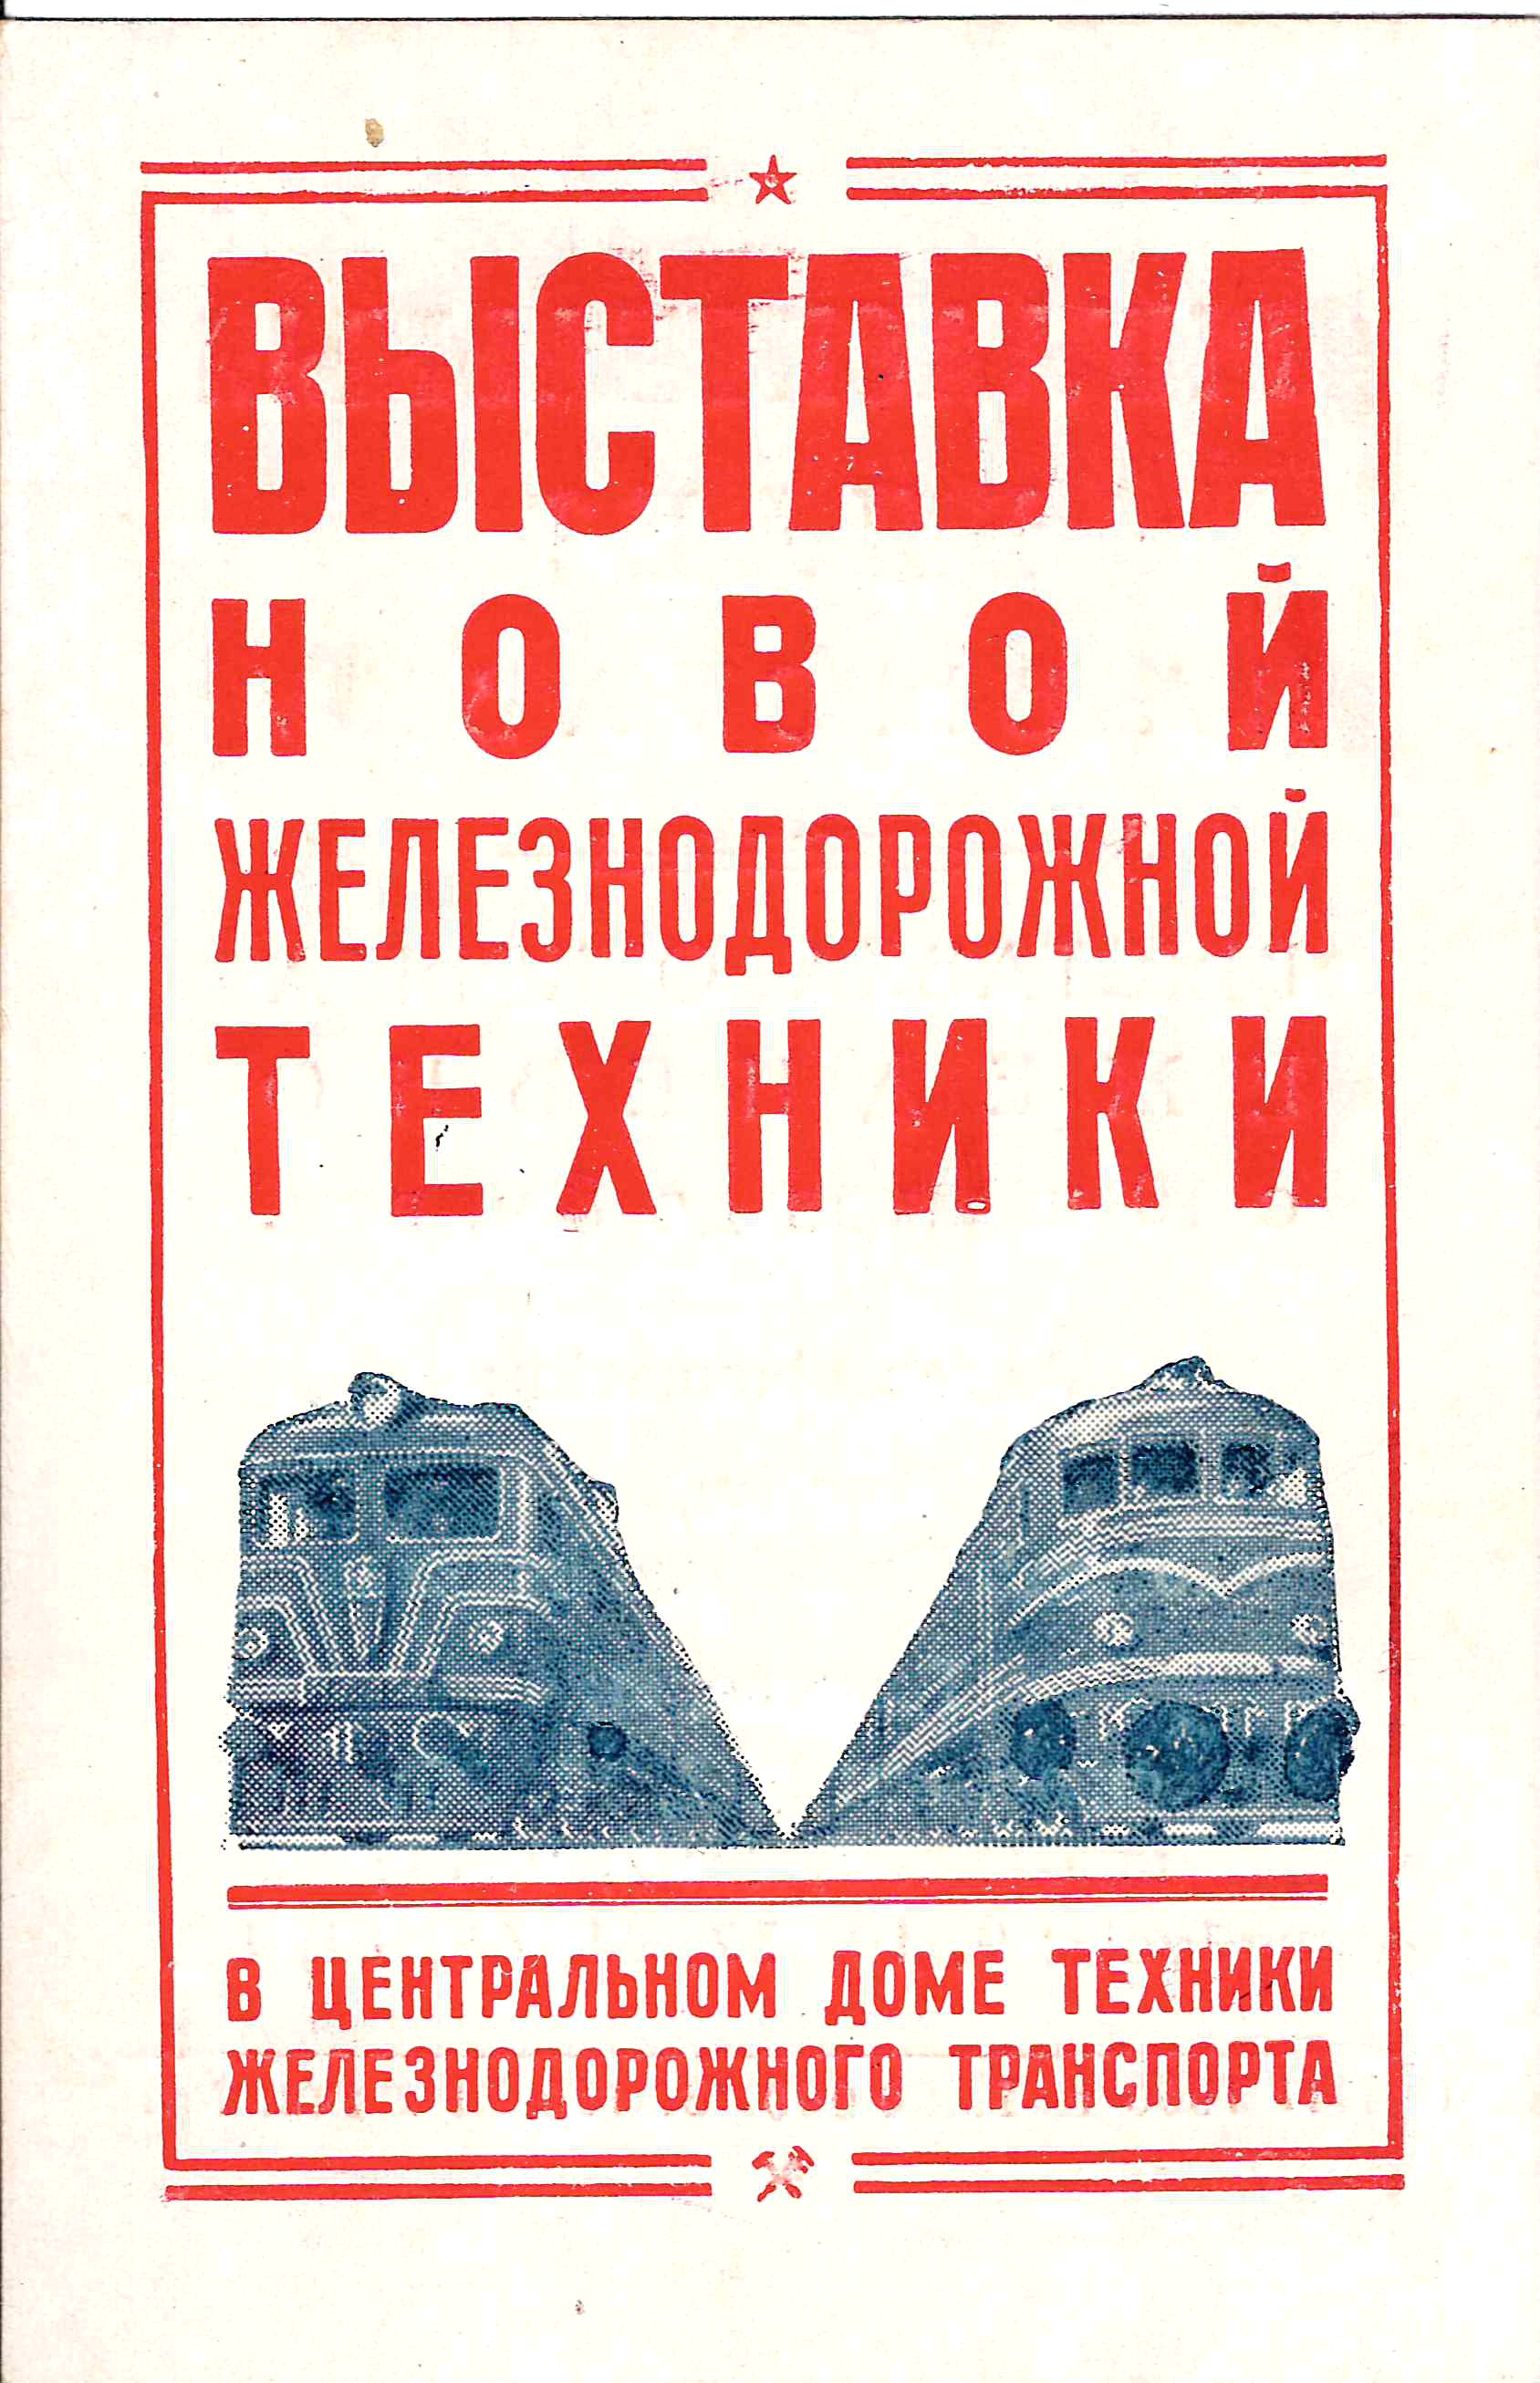 Пригласительный билет на выставку новой железнодорожной техники в Центральном доме техники железнодорожного транспорта в Москве на площади Рижского вокзала. 1956.